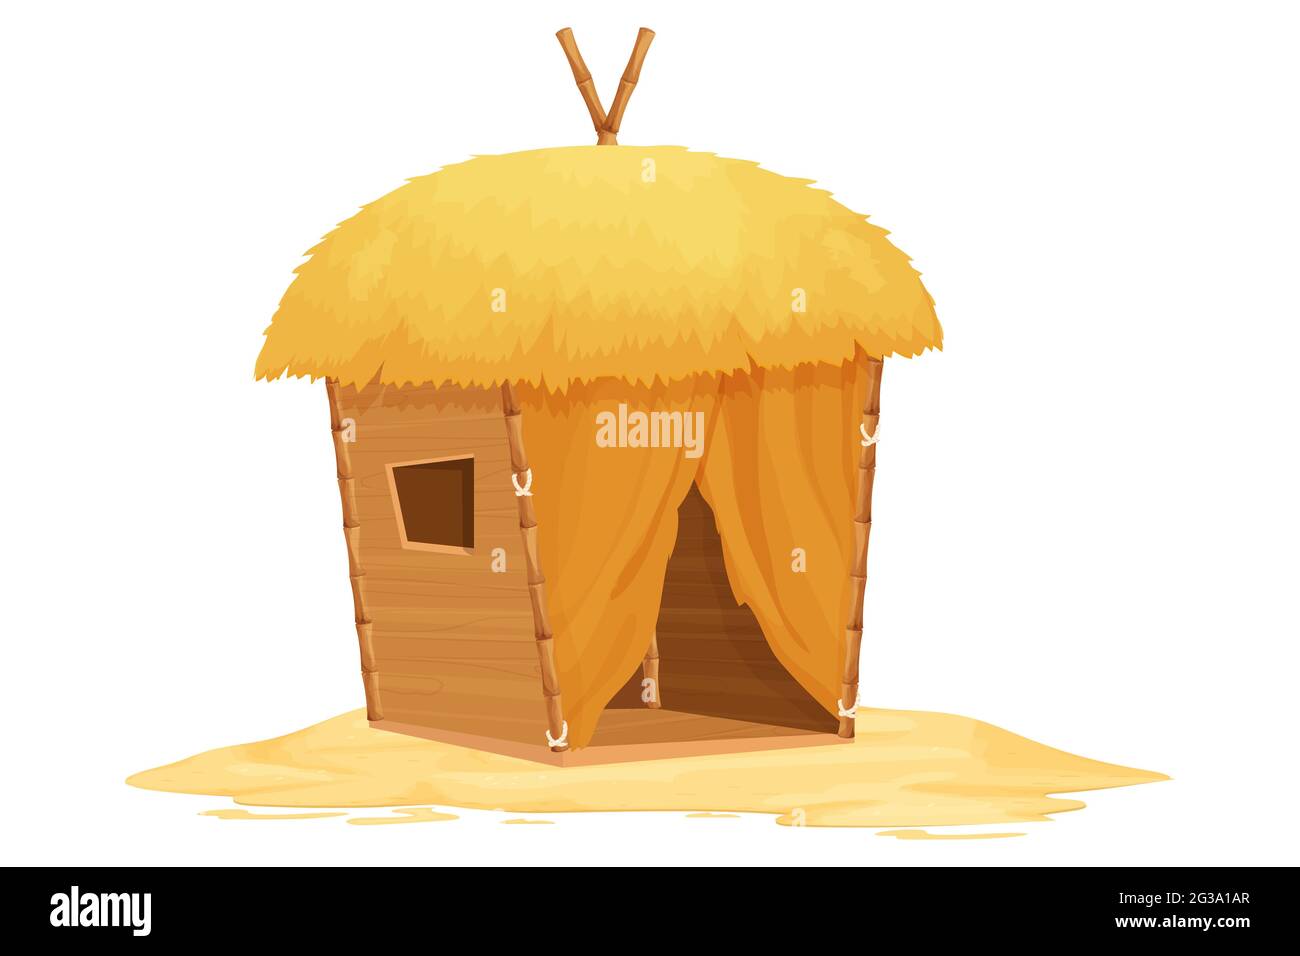 Strandbungalow, Tiki-Hütte mit Strohdach, Bambus- und Holzdetails auf Sand im Cartoon-Stil isoliert auf weißem Hintergrund. Fantasy Gebäude, Urlaub Stock Vektor